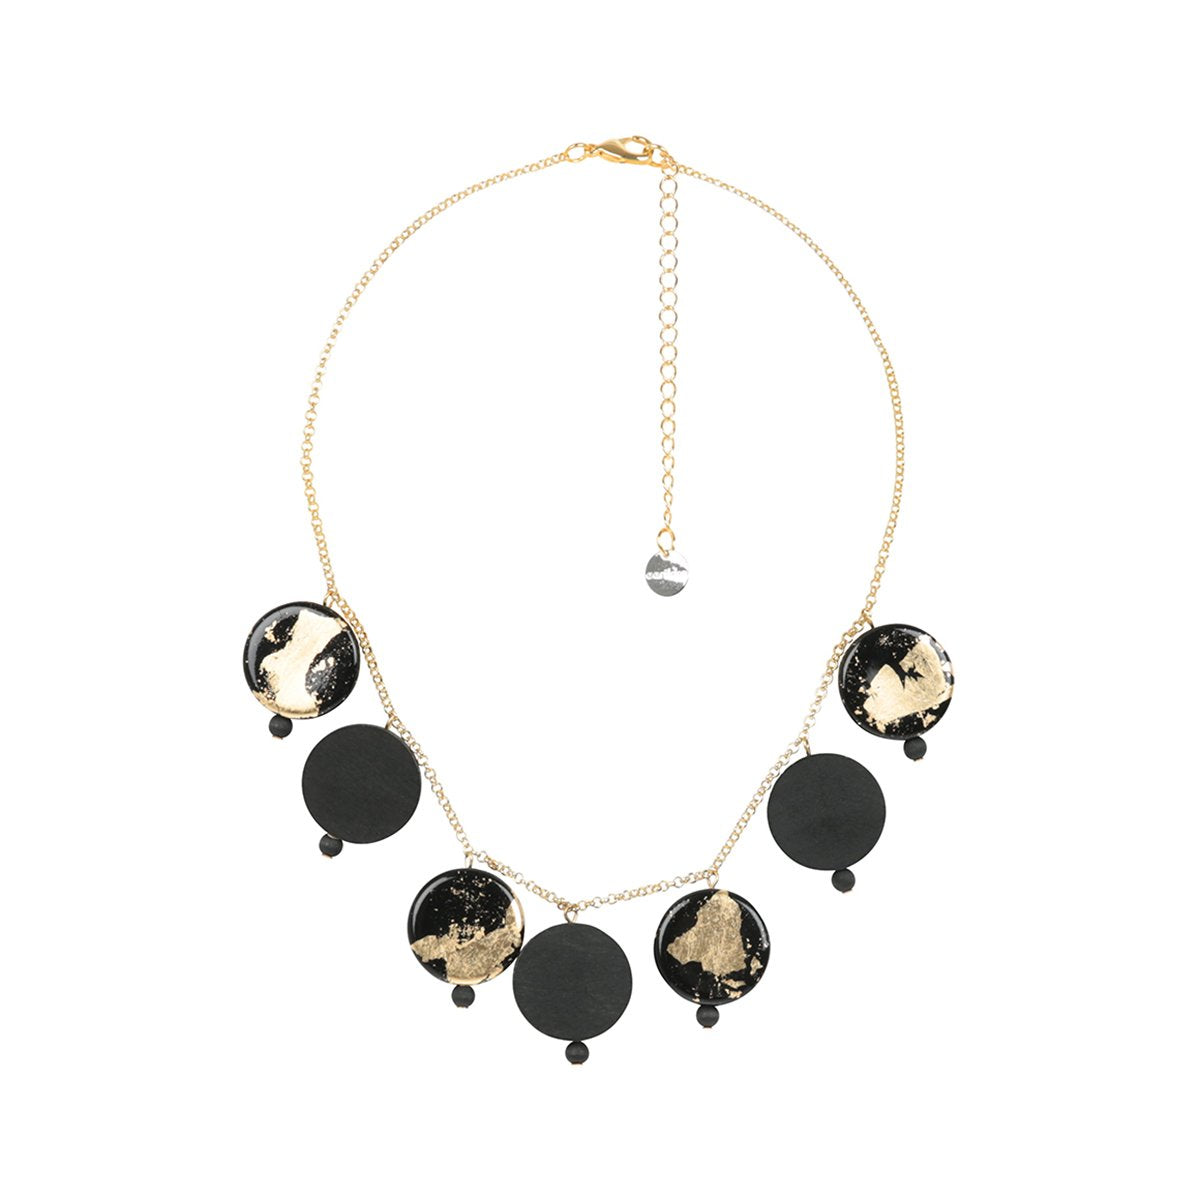 Verona necklace, black